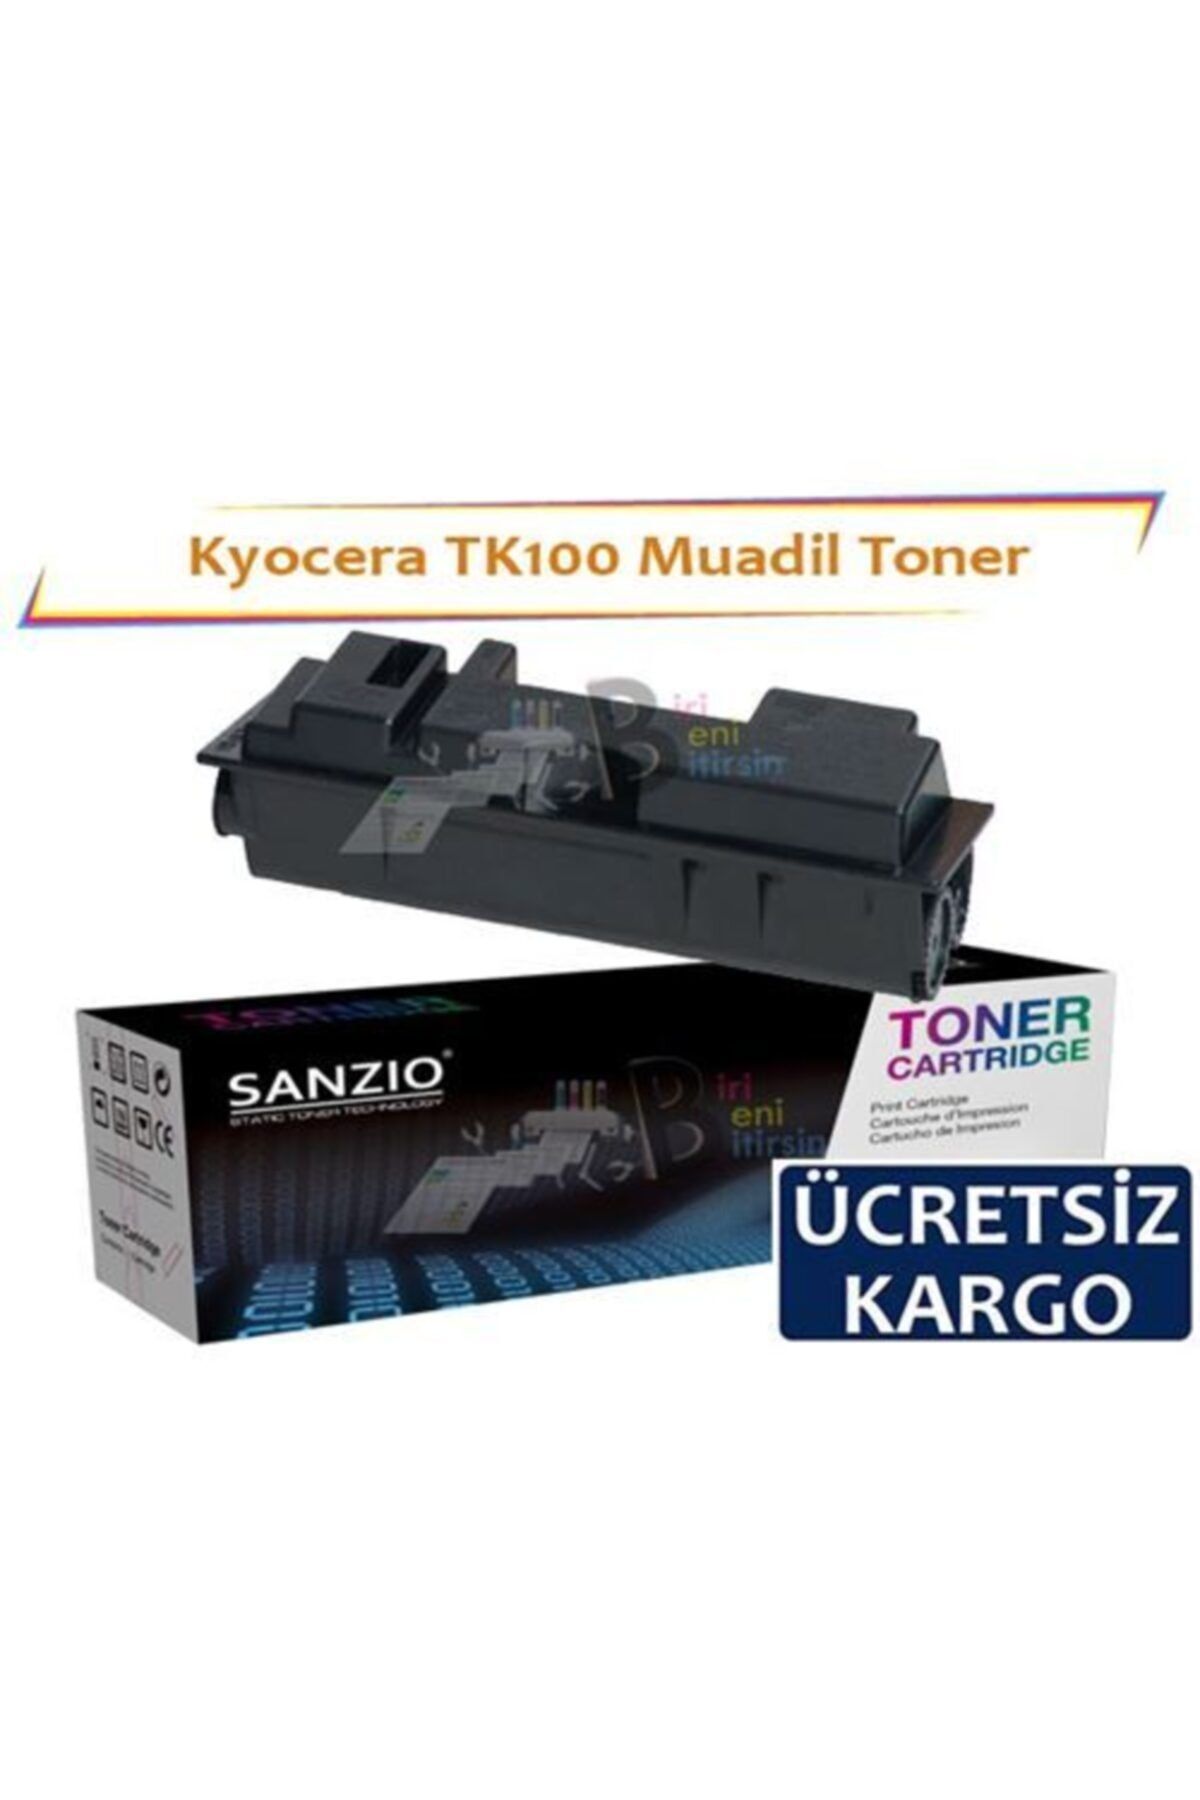 BBB Kyocera Tk 100 Muadil Toner Kyocera Fs 1000 1010